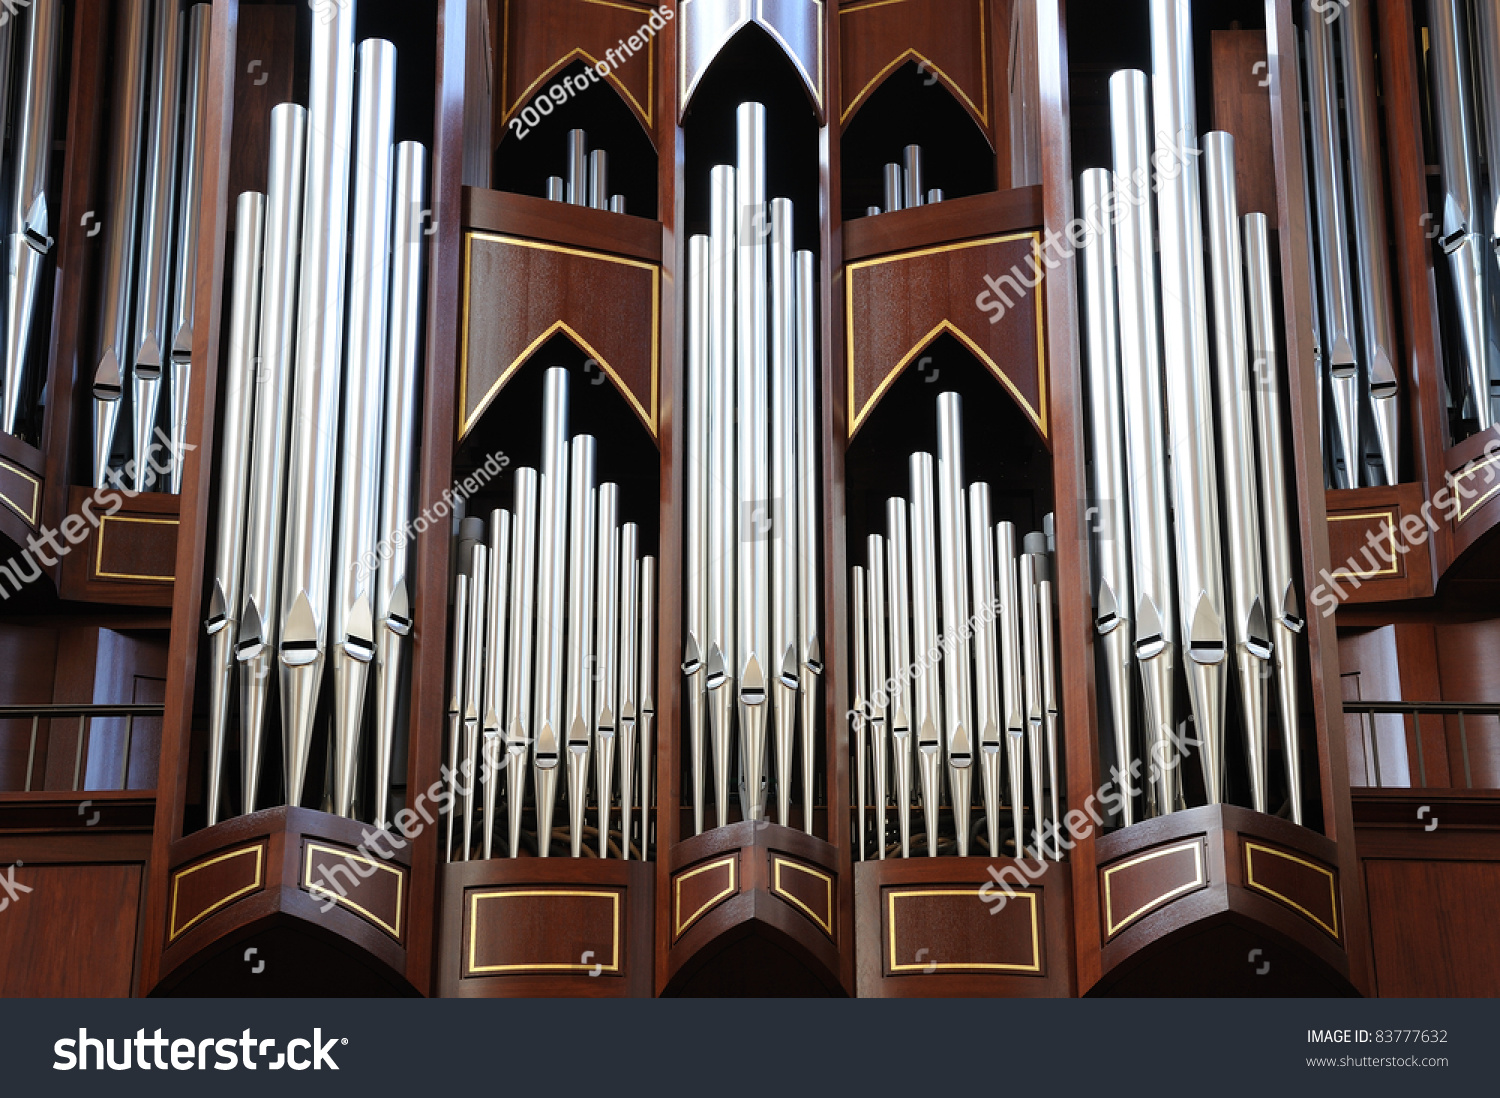 free clip art church organ - photo #42